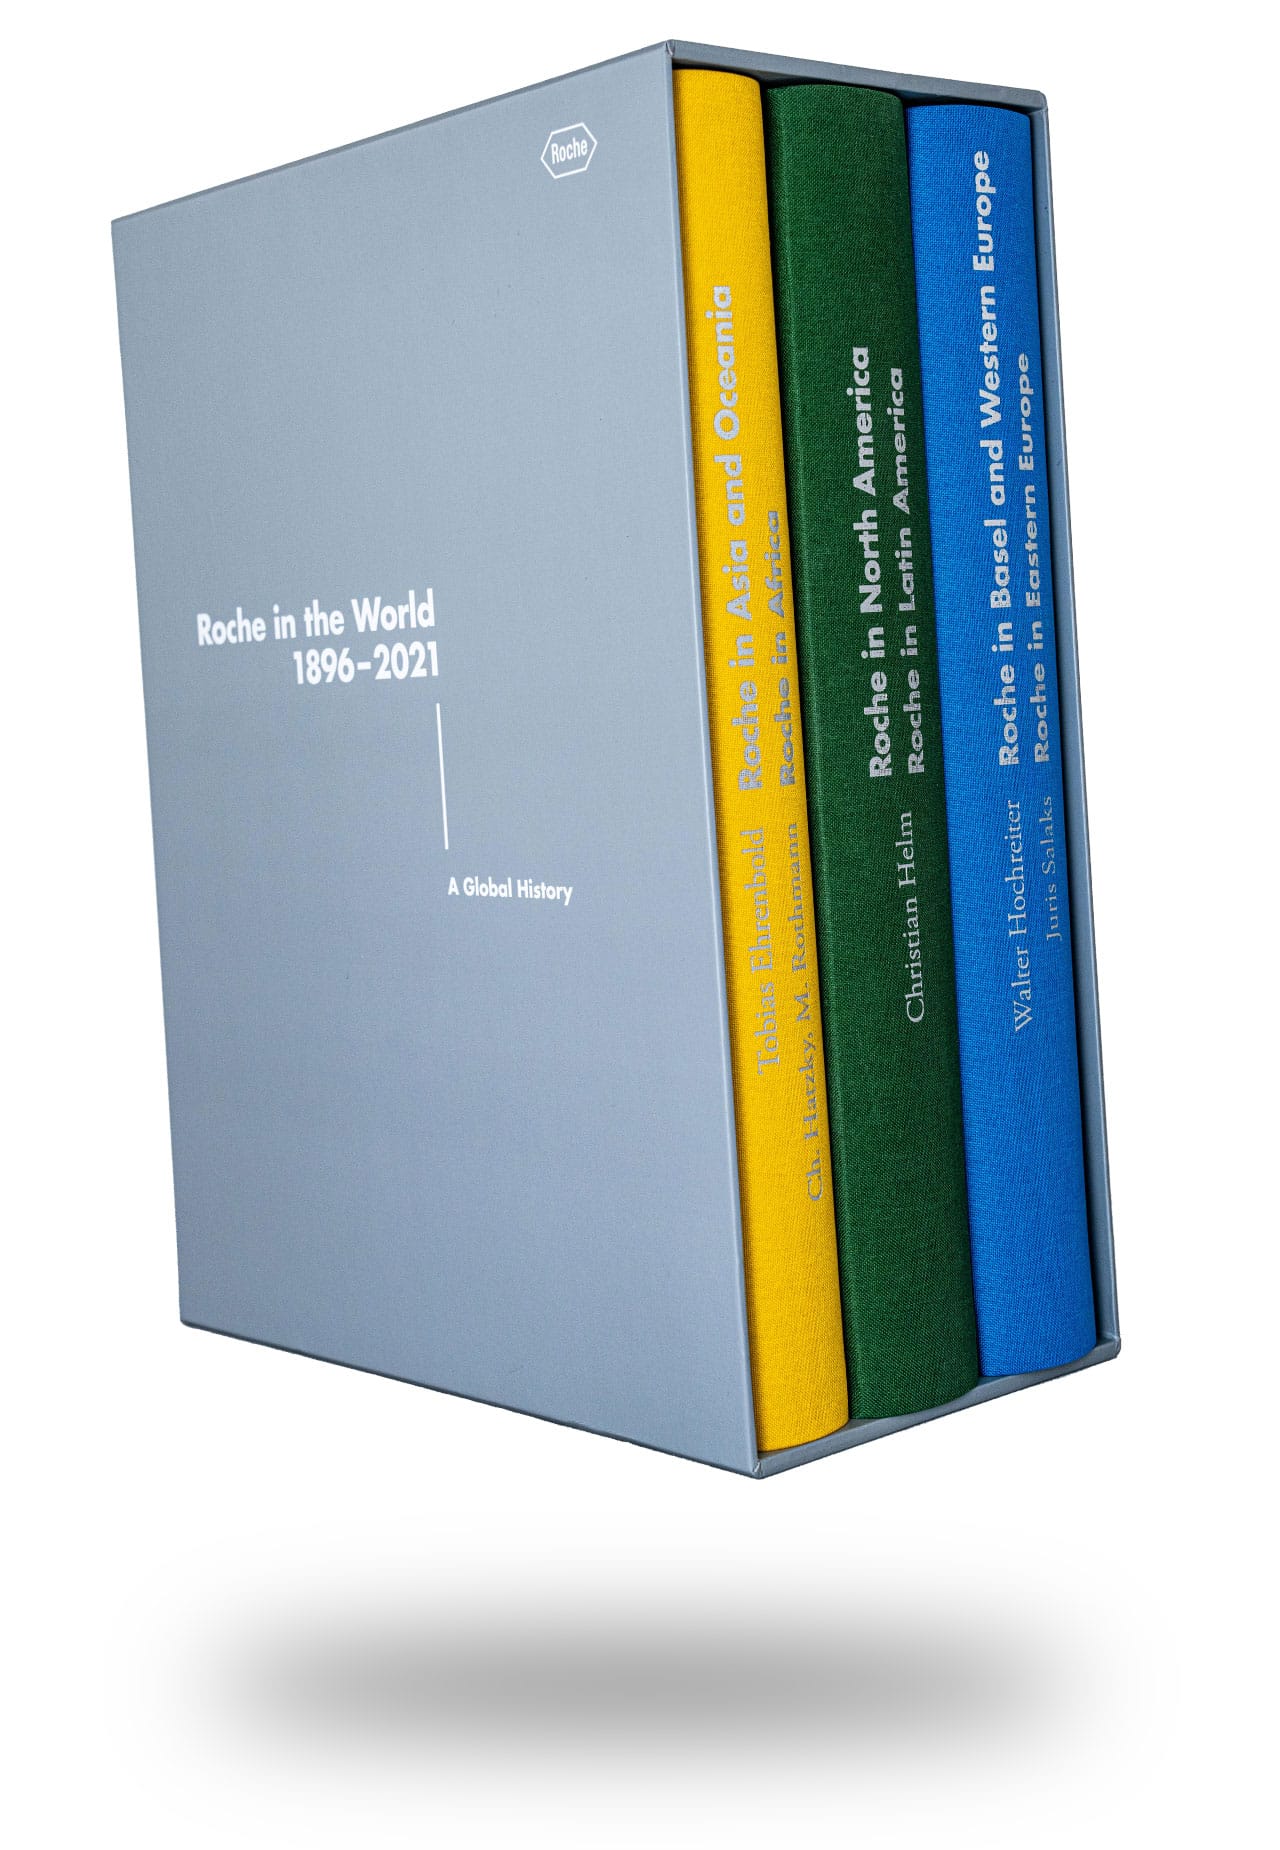 3 außergewöhnlich hochwertige Gewebebände für Roche Weltweit in 3 Farben, 448-632 Seiten, Silberprägung, im stabilen Schuber, hochchwertigst produziert von der Conzella – Mit Leidenschaft zum Buch.